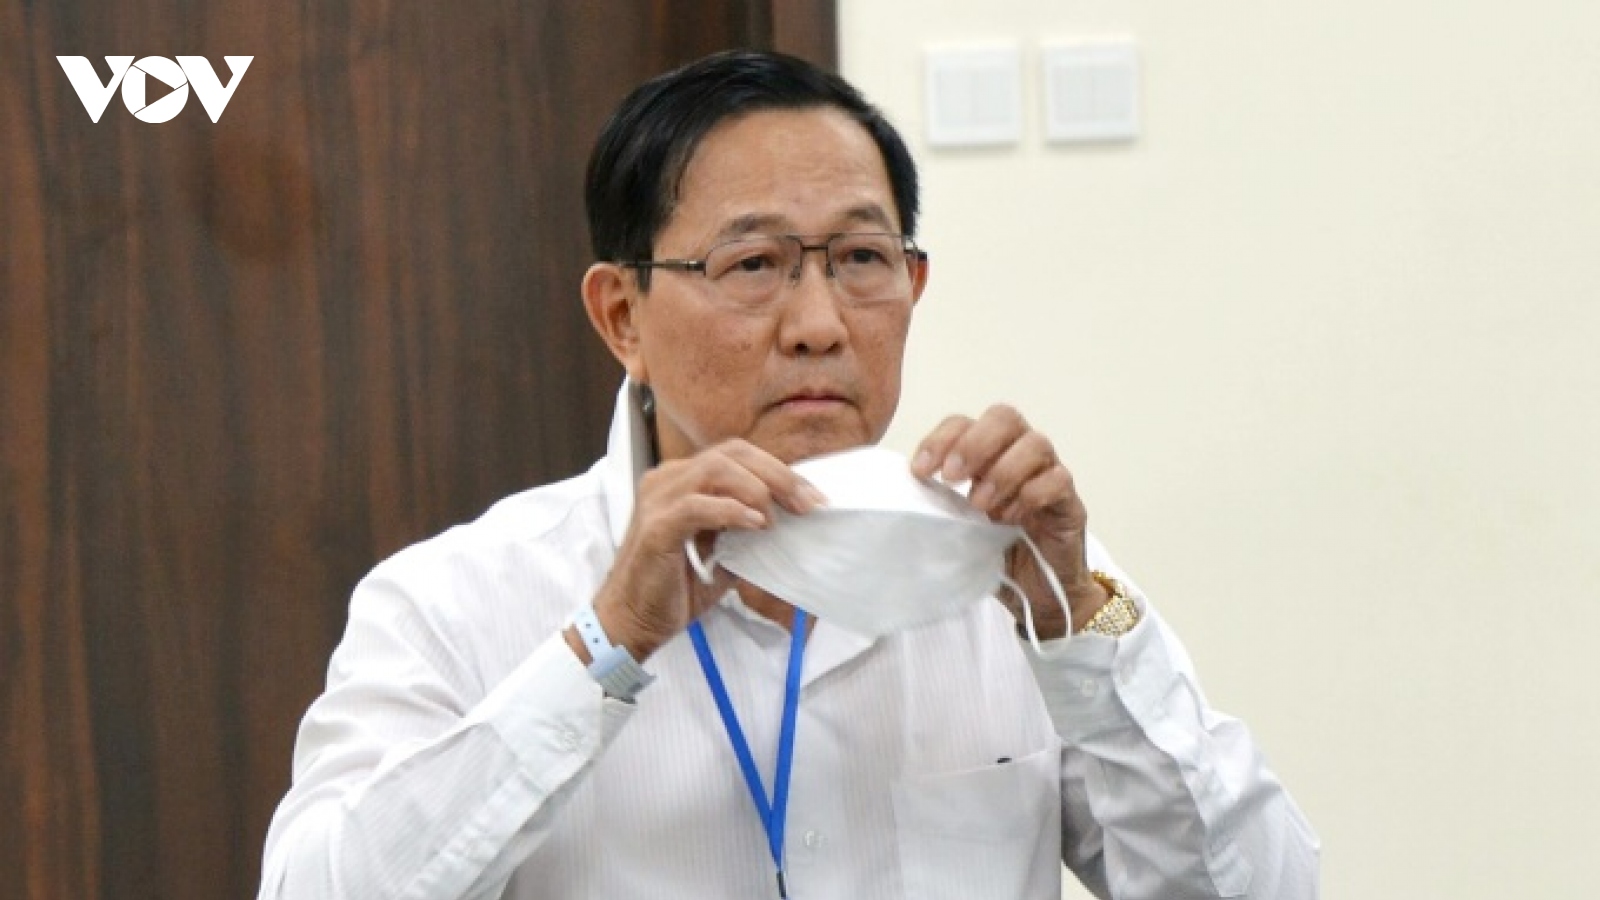 Bị cáo Cao Minh Quang xin giảm nhẹ hình phạt trong lời nói sau cùng